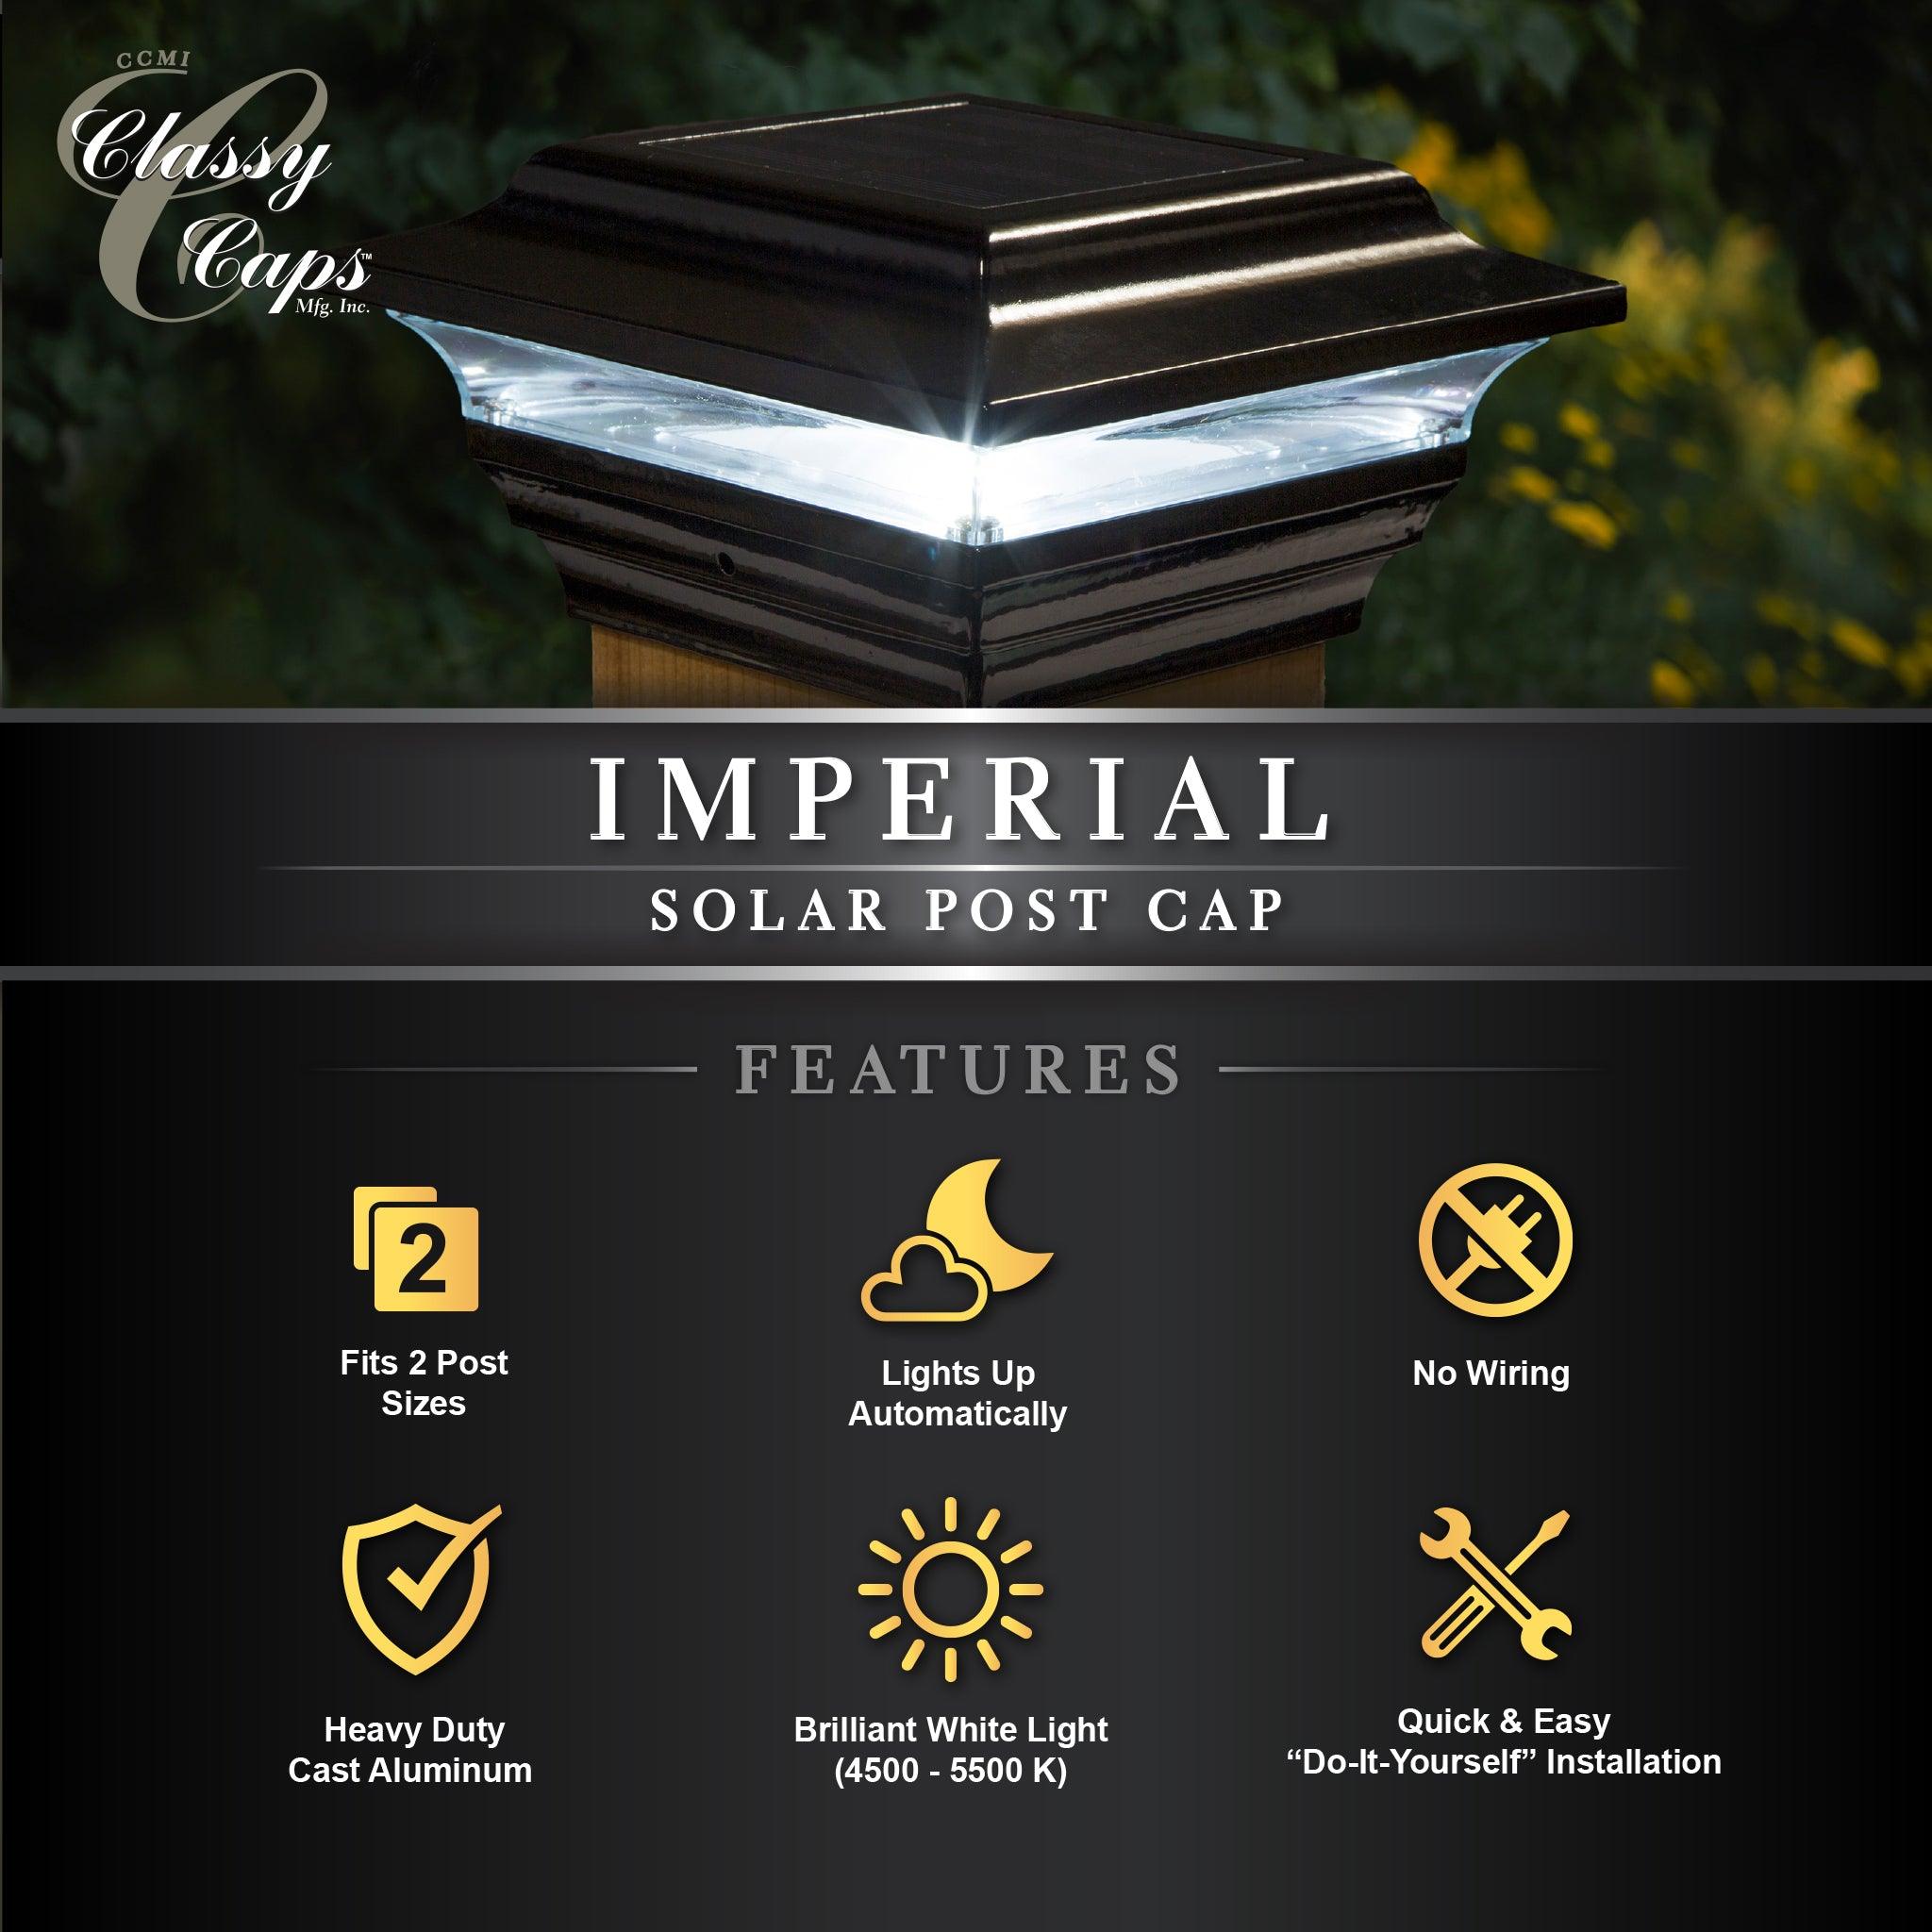 Imperial Solar Post Cap - Black With 4.5" X 4.5" Adaptor - Classy Caps Mfg. Inc.